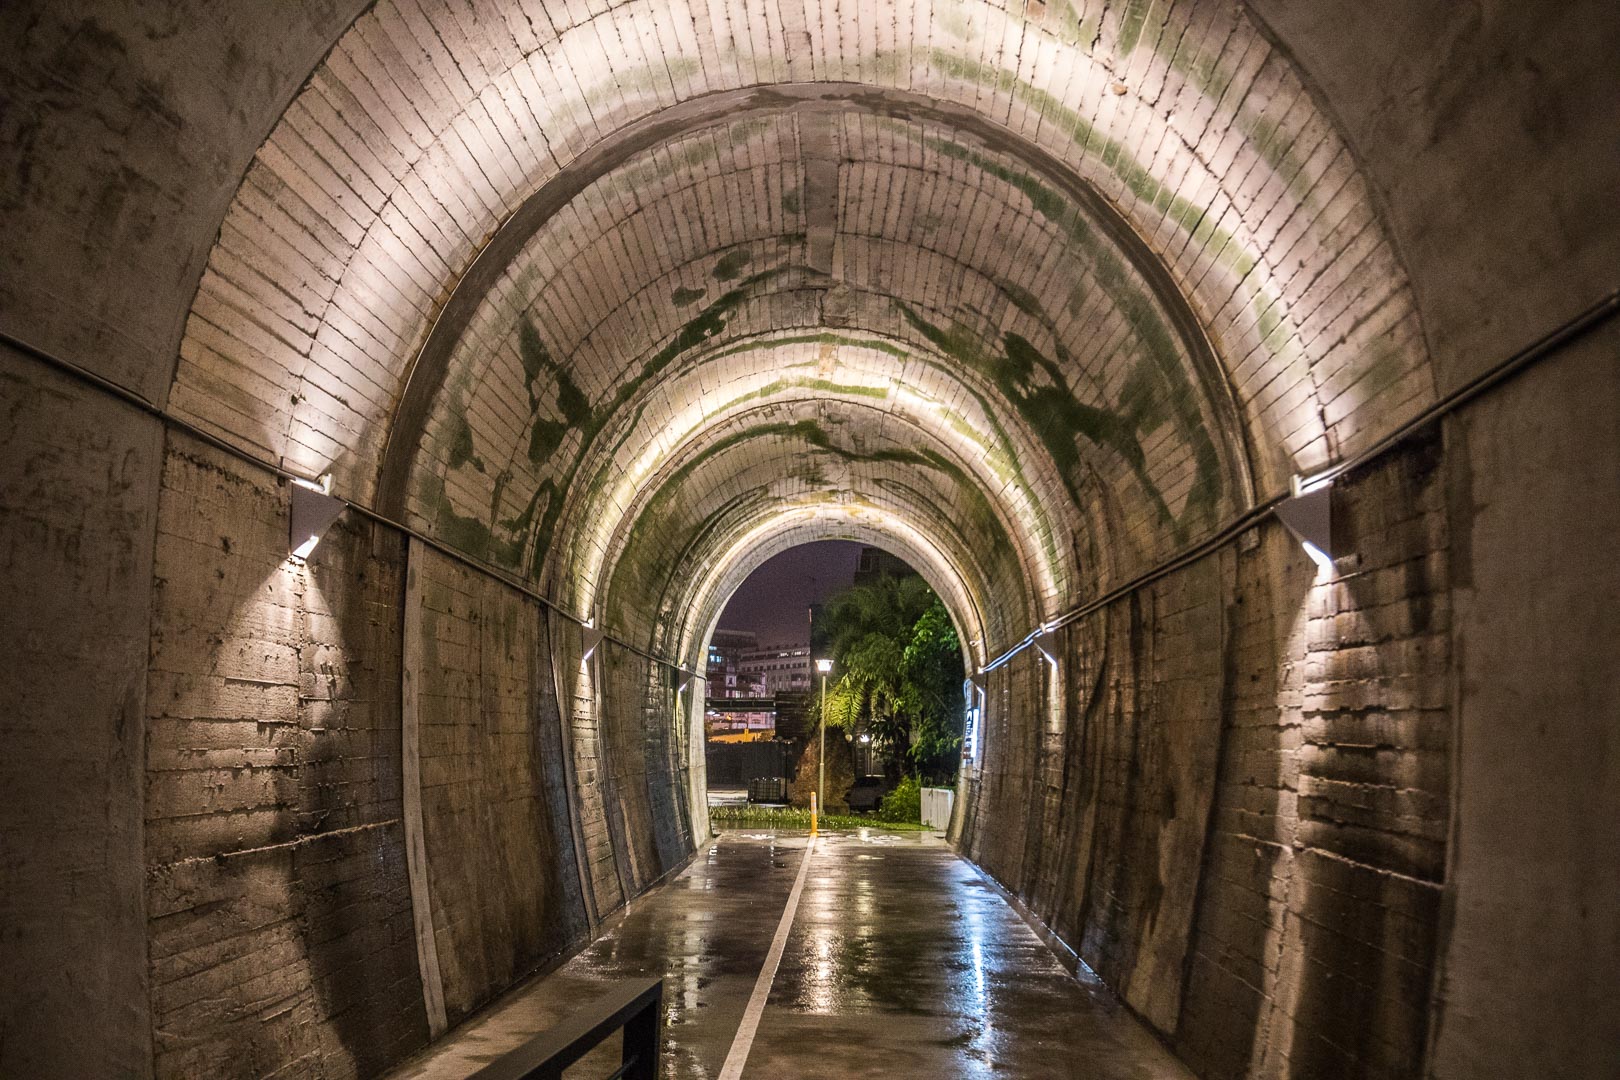 宜蘭蘇東隧道3,宜蘭3D海底彩繪隧道,宜蘭景點,蘇澳景點,蘇東隧道3D海底彩繪隧道,蘇東隧道,3D海底彩繪隧道